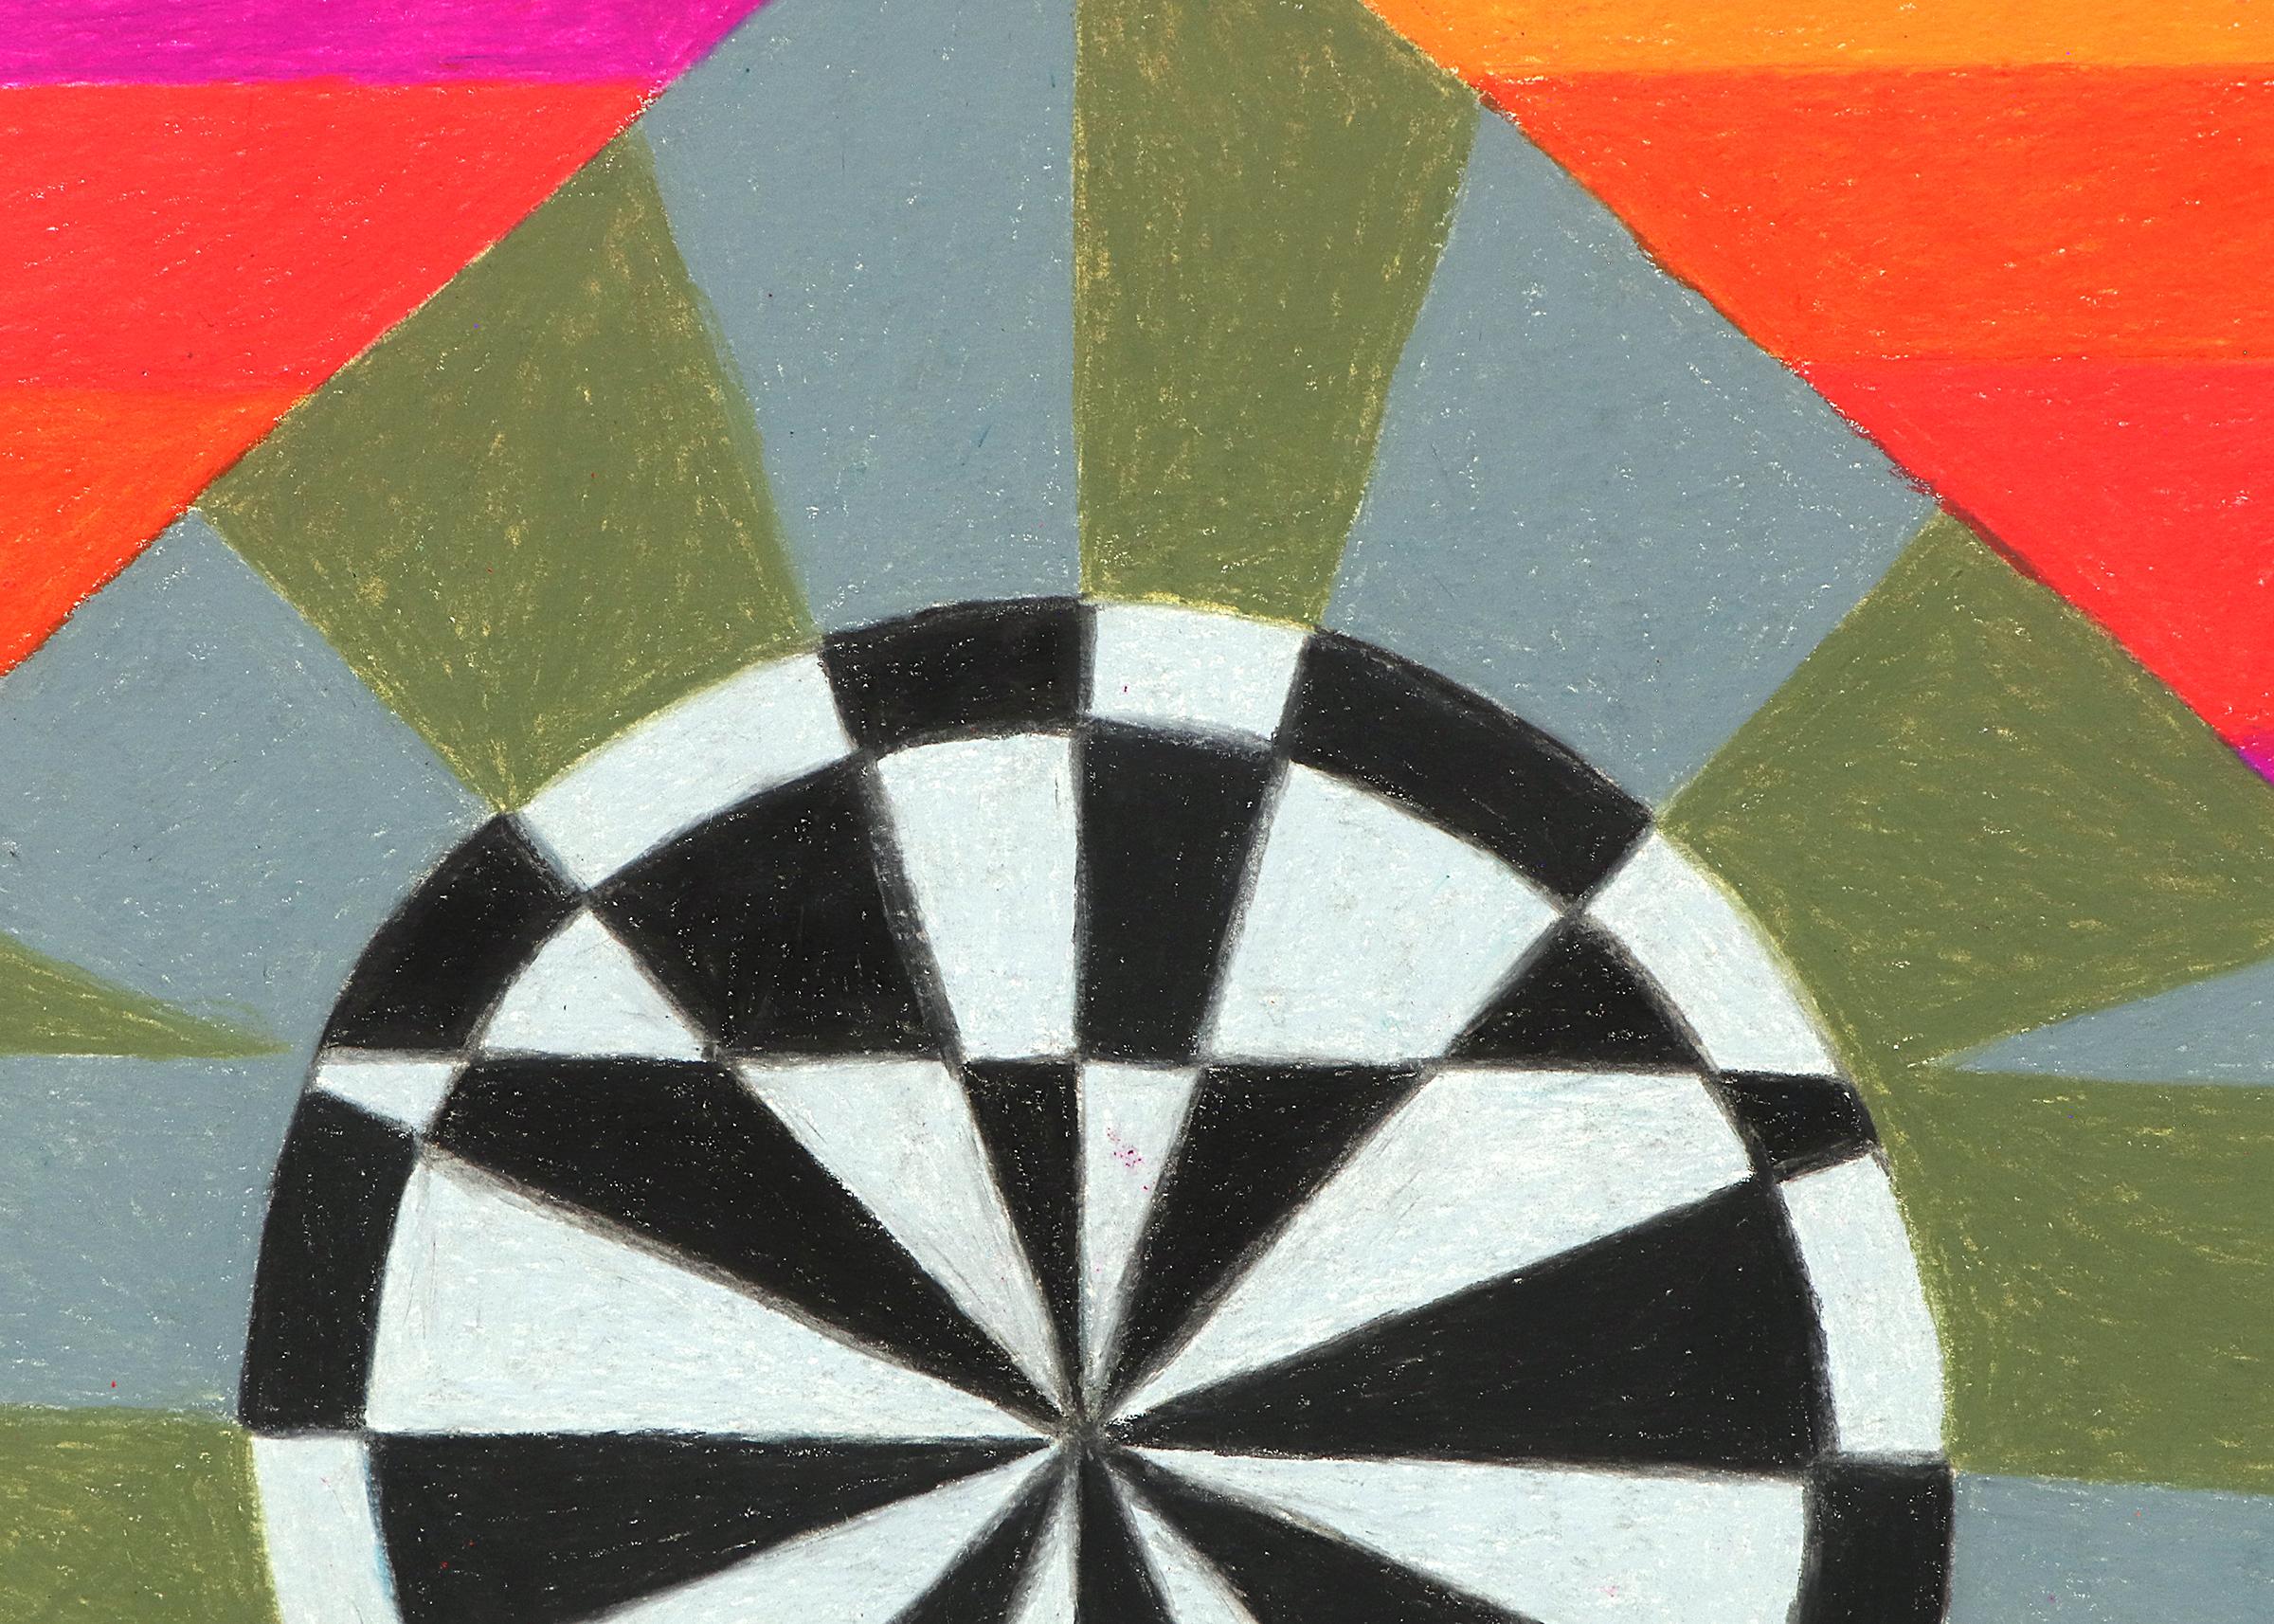 Zirkus-Serie: Target ist eine abstrakte Zeichnung von Margo Hoff (1910-2008) mit Buntstift auf Papier aus dem Jahr 1980. Abstrakte Komposition in leuchtenden Orange-, Rosa-, Gelb- und Blautönen mit schwarzen und weißen Akzenten. Präsentiert in einem